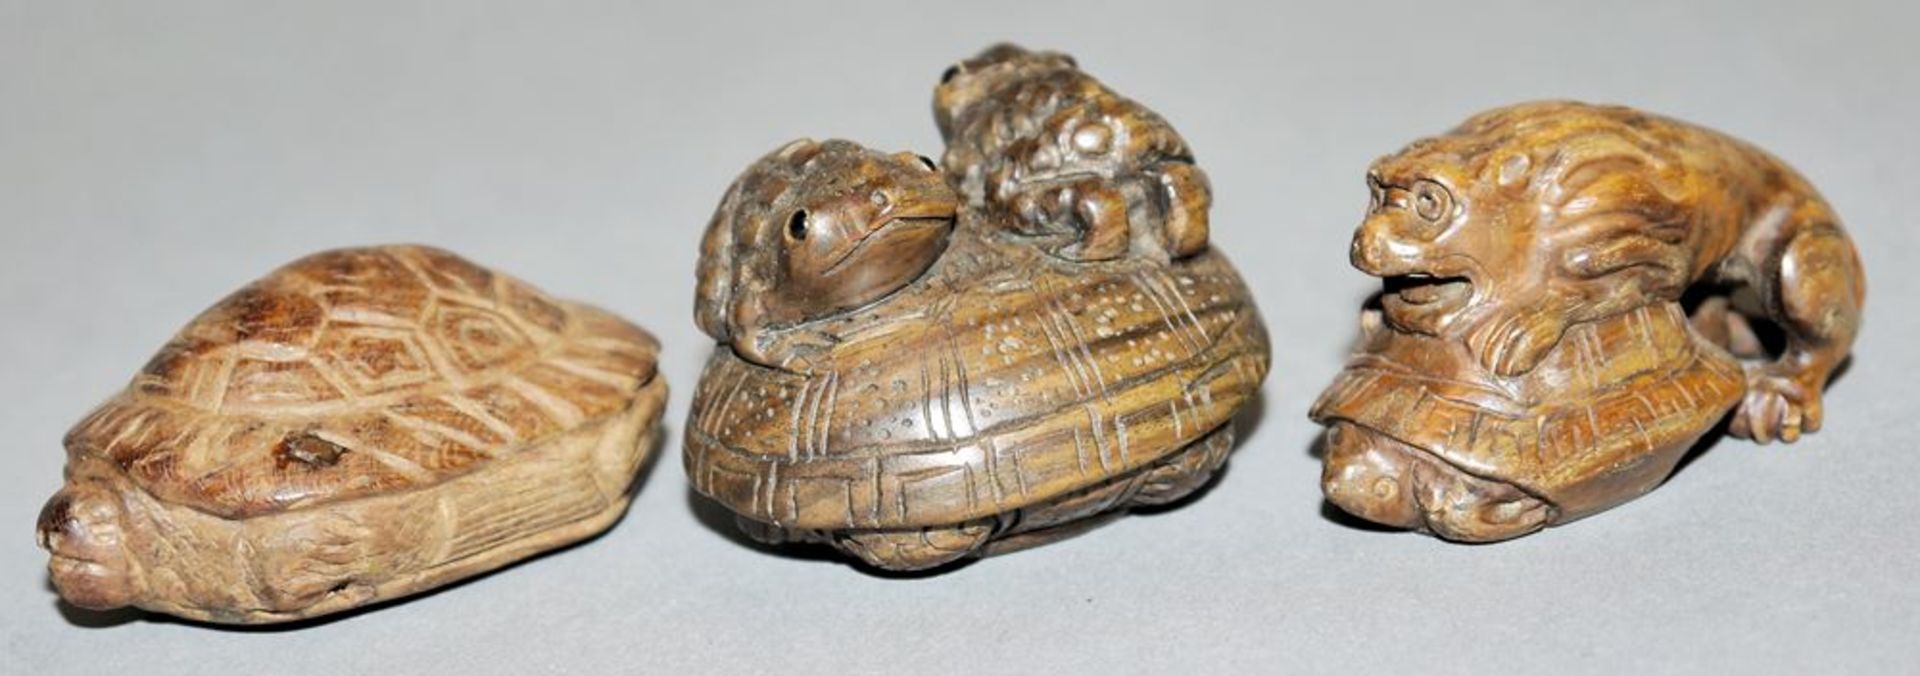 Kröten und Schildkröten, sechs japanische Netsuke aus Edelholz - Image 2 of 3